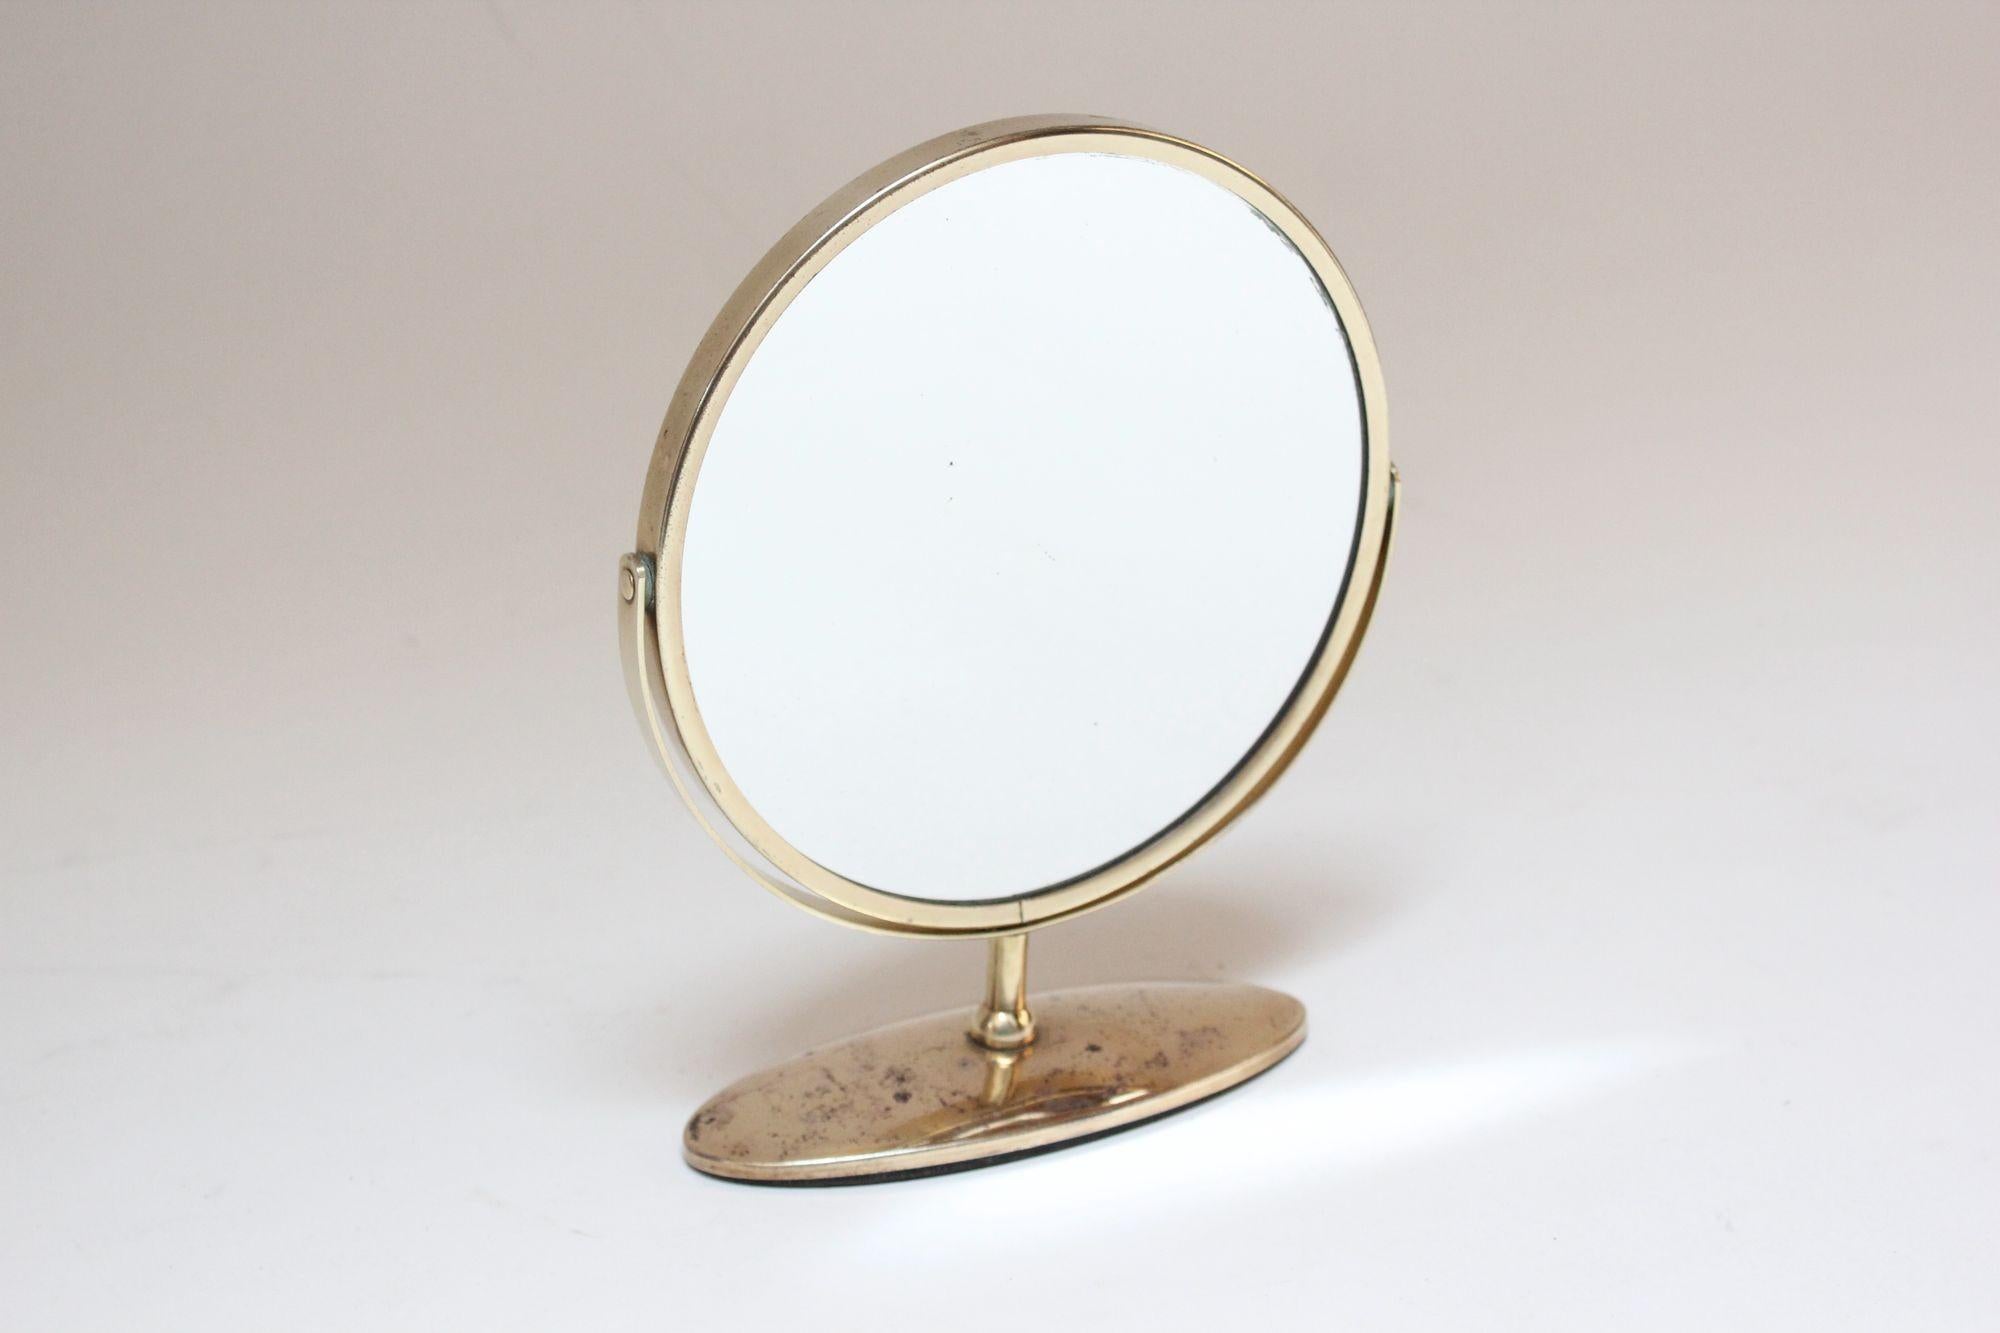 Elegant et petit miroir de table/d'appoint en laiton (vers 1950, USA).
Le miroir possède deux faces en verre et peut pivoter de l'une à l'autre.
Le laiton a été nouvellement poli, mais il reste des taches de ternissement (principalement à la base),